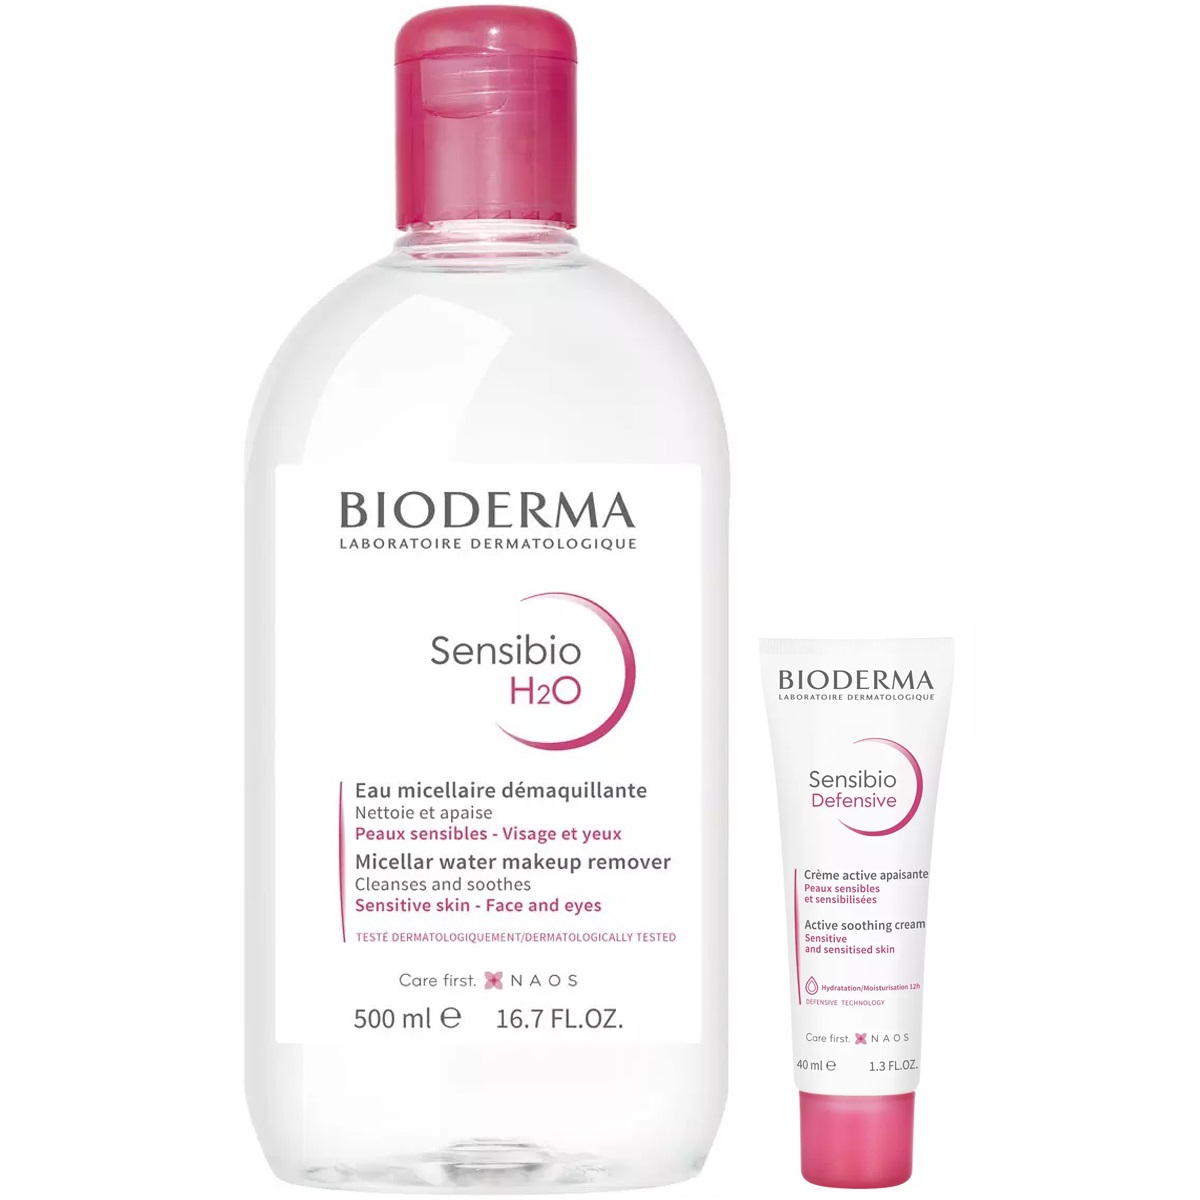 Bioderma Набор для чувствительной кожи: мицеллярная вода, 500 мл + крем, 40 мл (Bioderma, Sensibio) крем для лица bioderma легкий увлажняющий крем для чувствительной кожи лица sensibio defensive